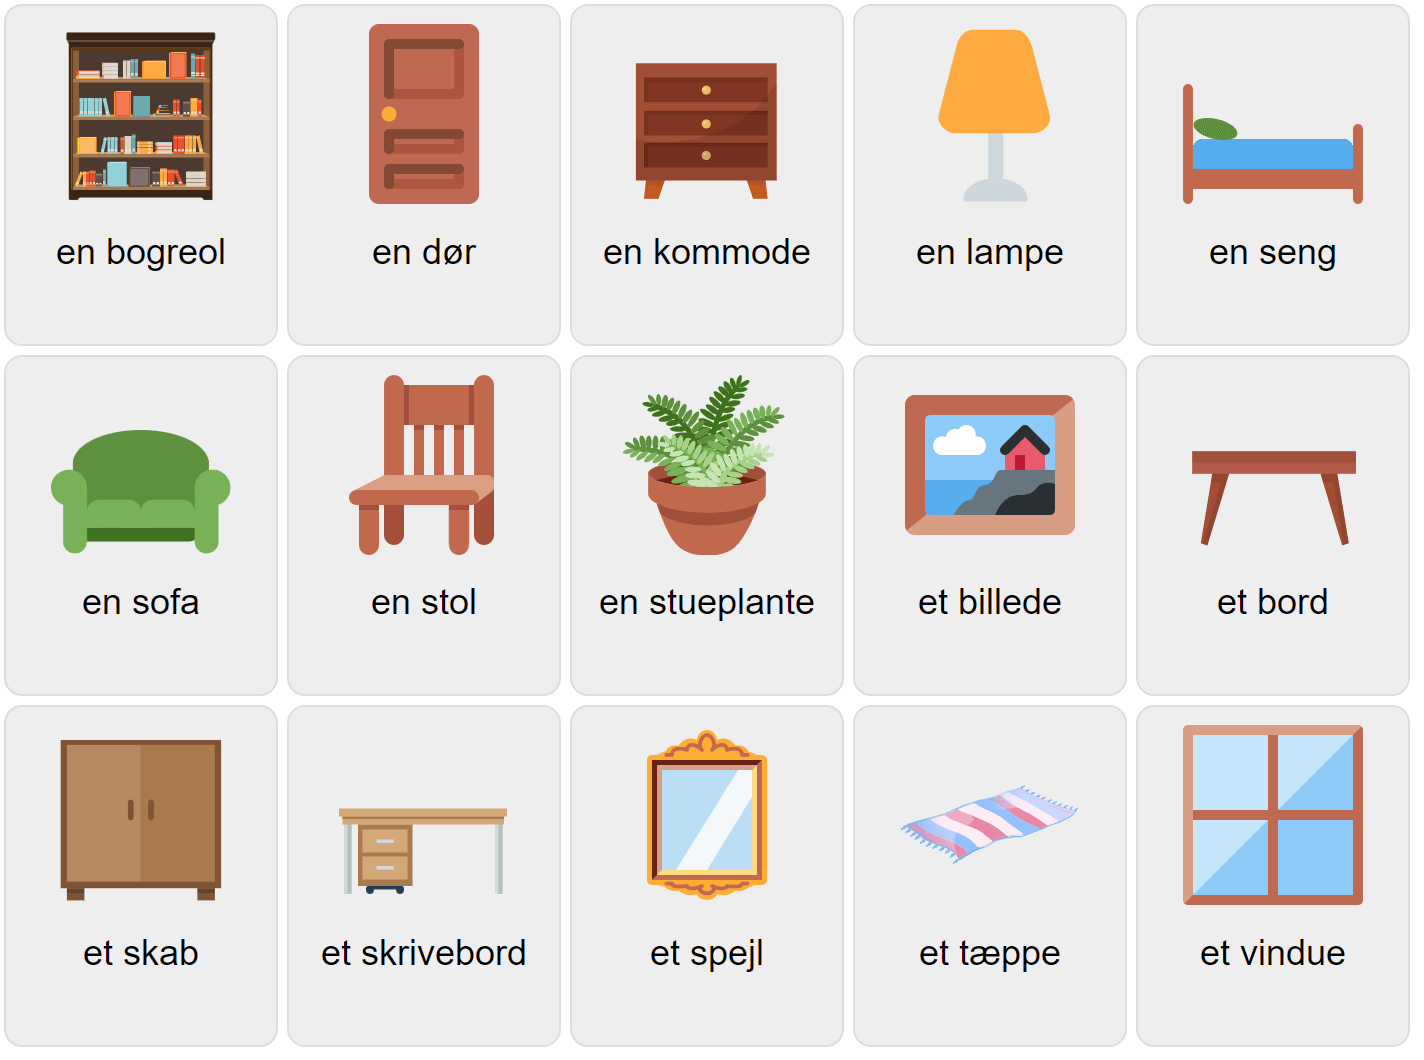 Furniture in Danish